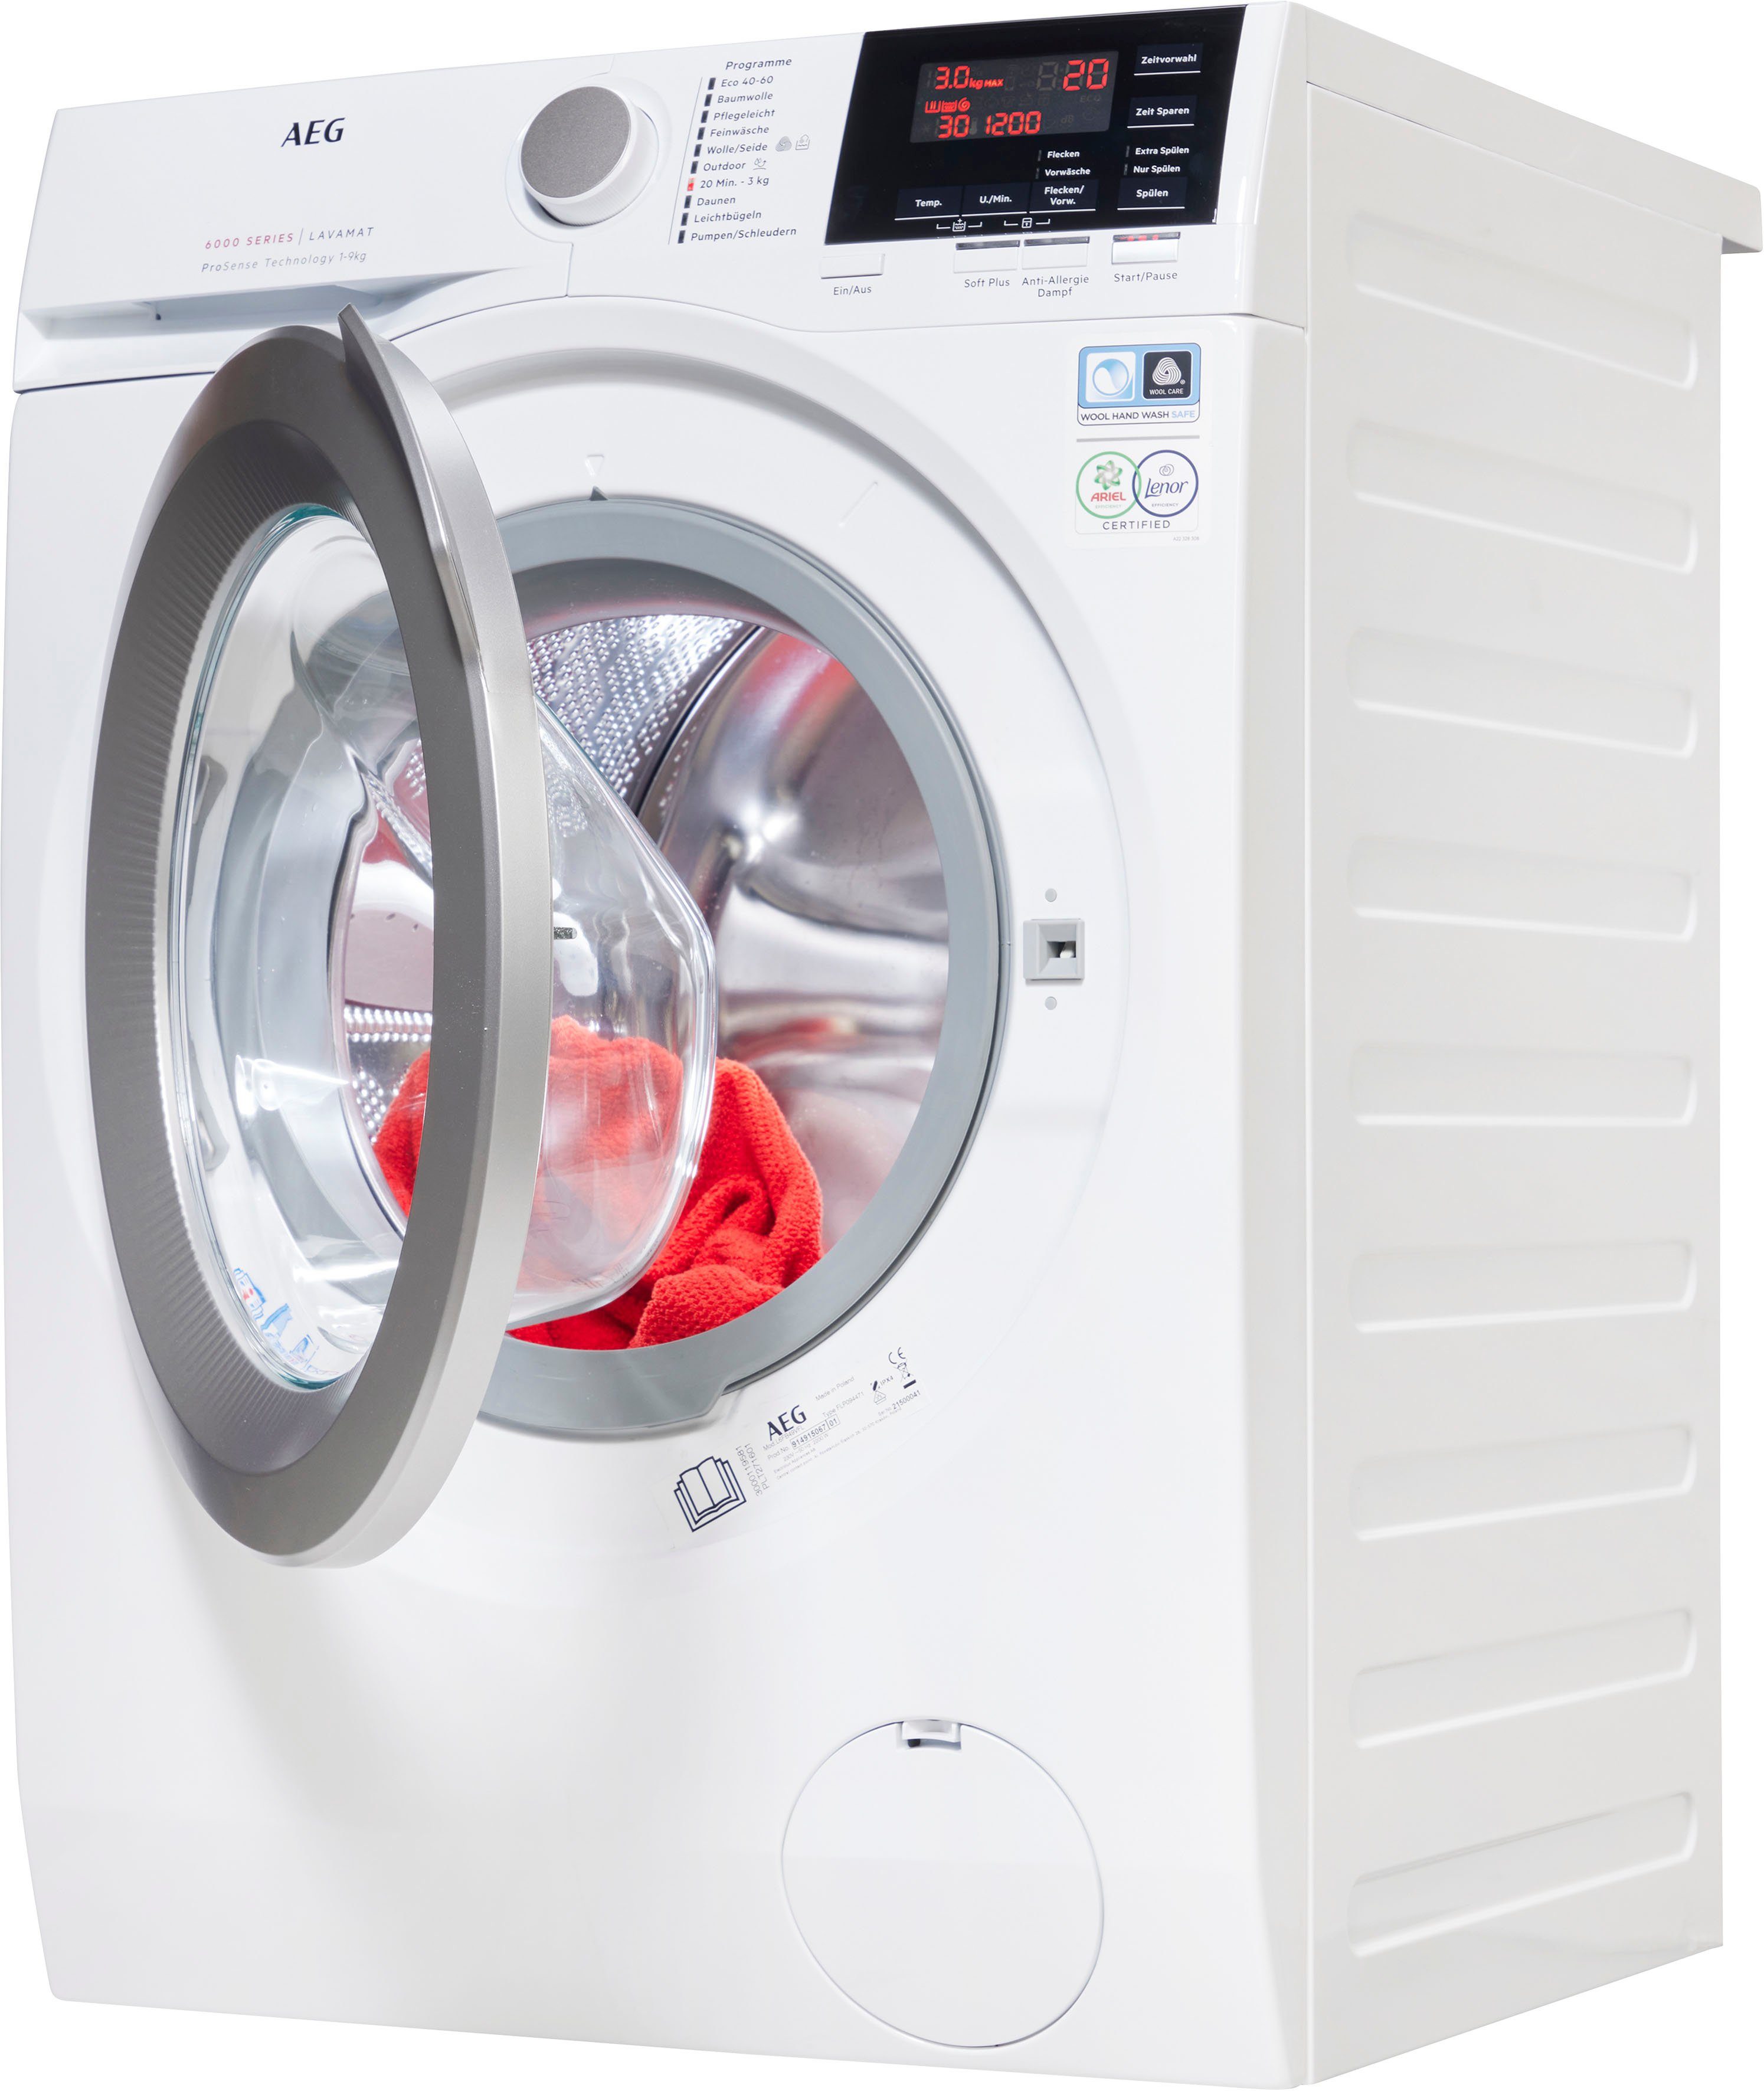 Hygiene-/ 6000 Dampf mit L6FB49VFL, 9 Serie U/min, 1400 Waschmaschine Anti-Allergie AEG Programm kg,